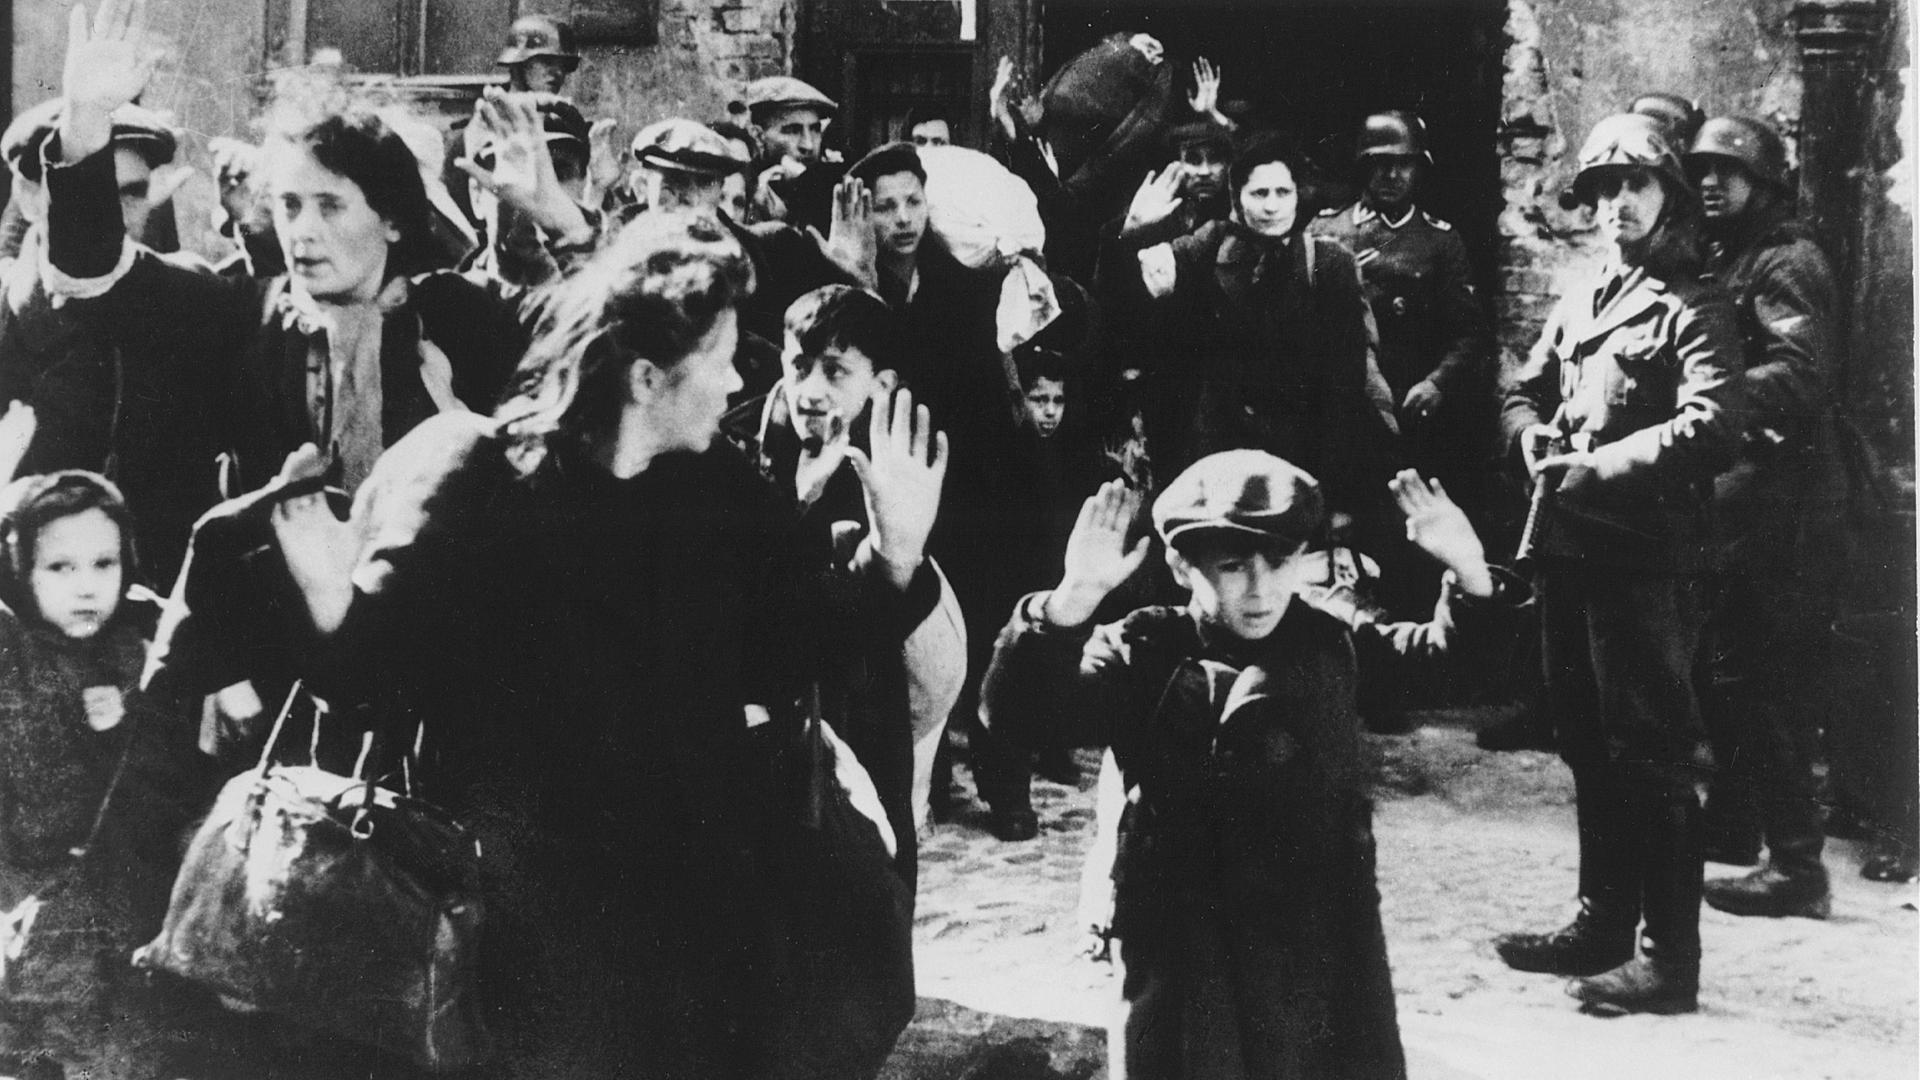 Foto vom Abtransport von Juden aus dem Warschauer Ghetto im Jahr 1943. Frauen und Kinder gehen mit erhobenen Händen aus einem Haus, Soldaten stehen mit Waffen daneben.